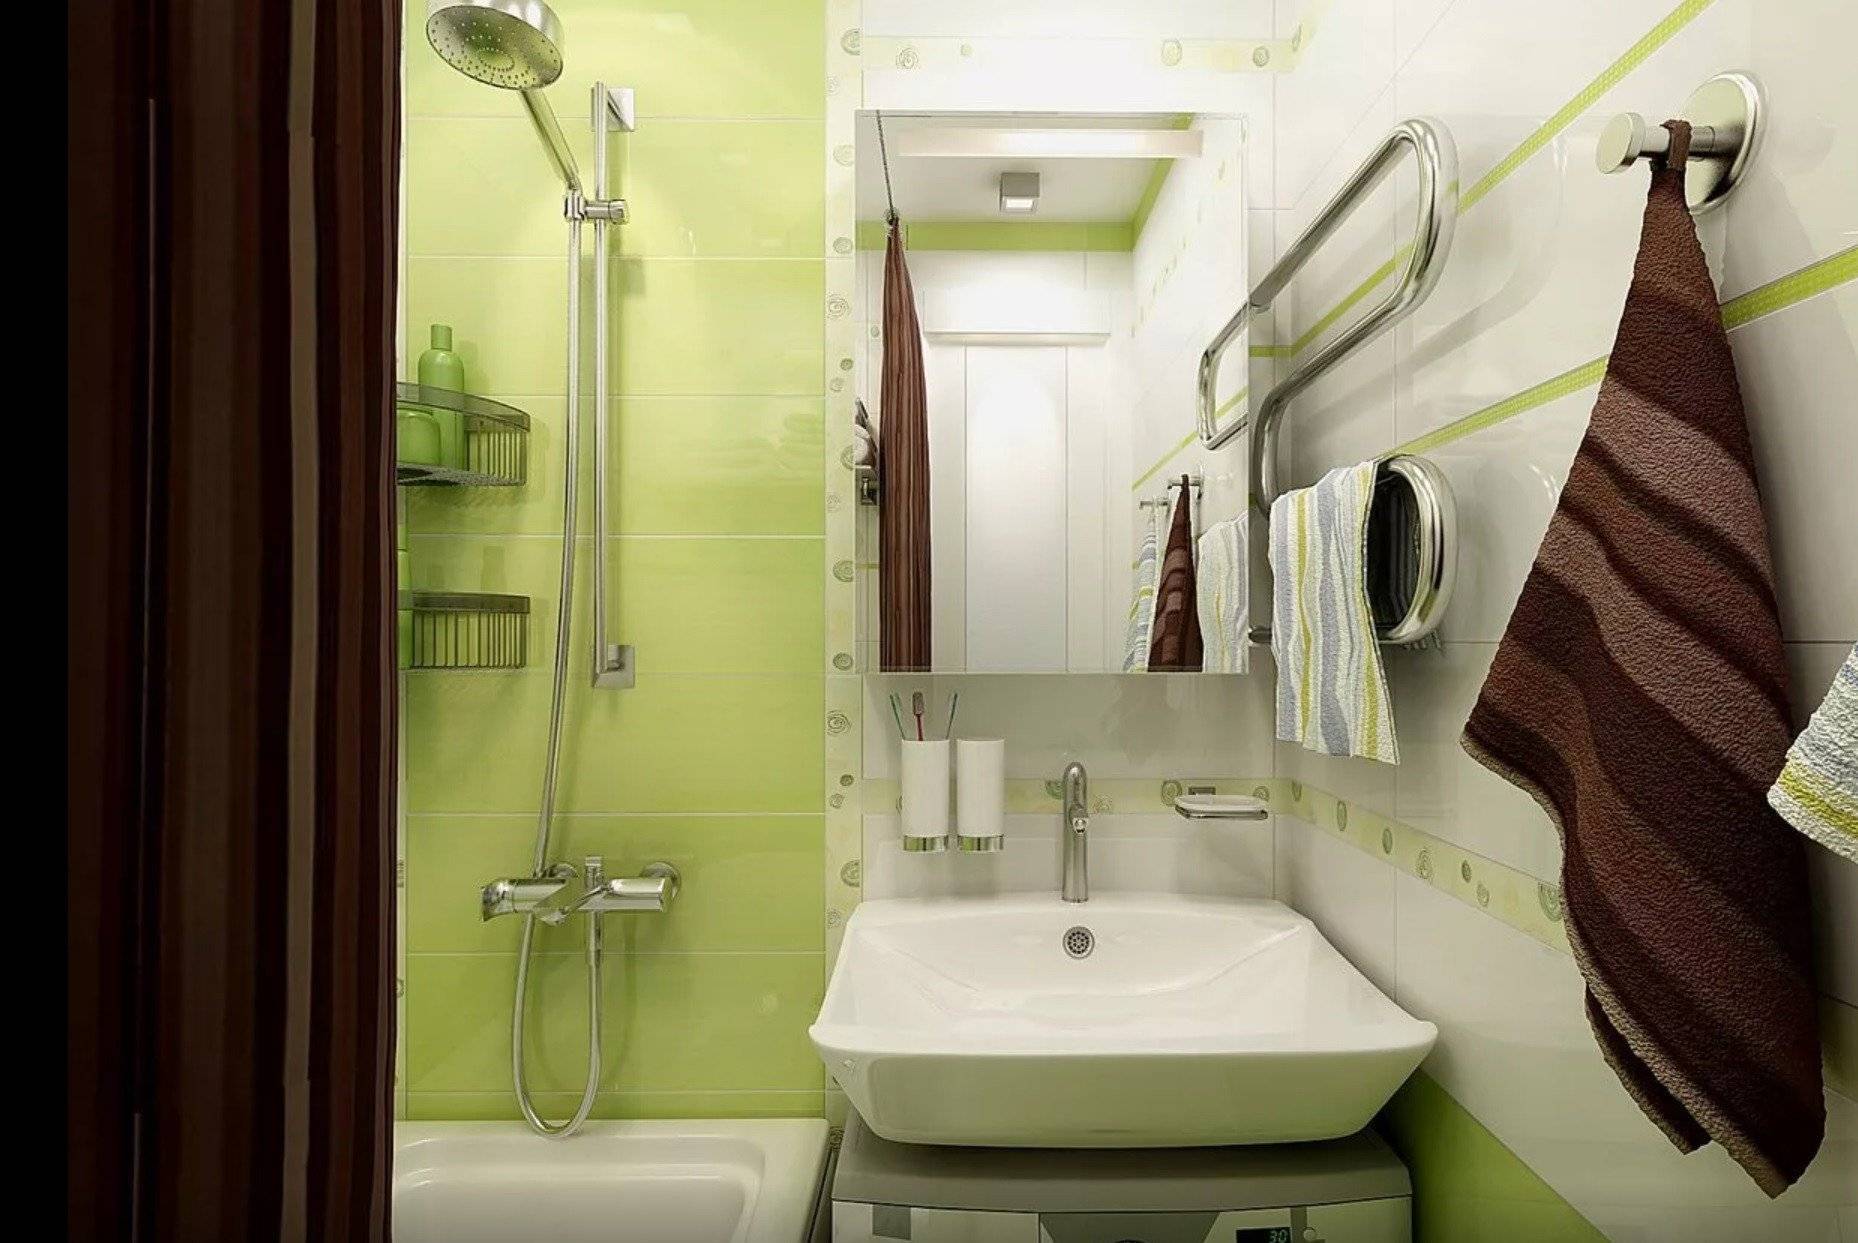 Бюджетная ванная комната в Германии, видео по обустройству